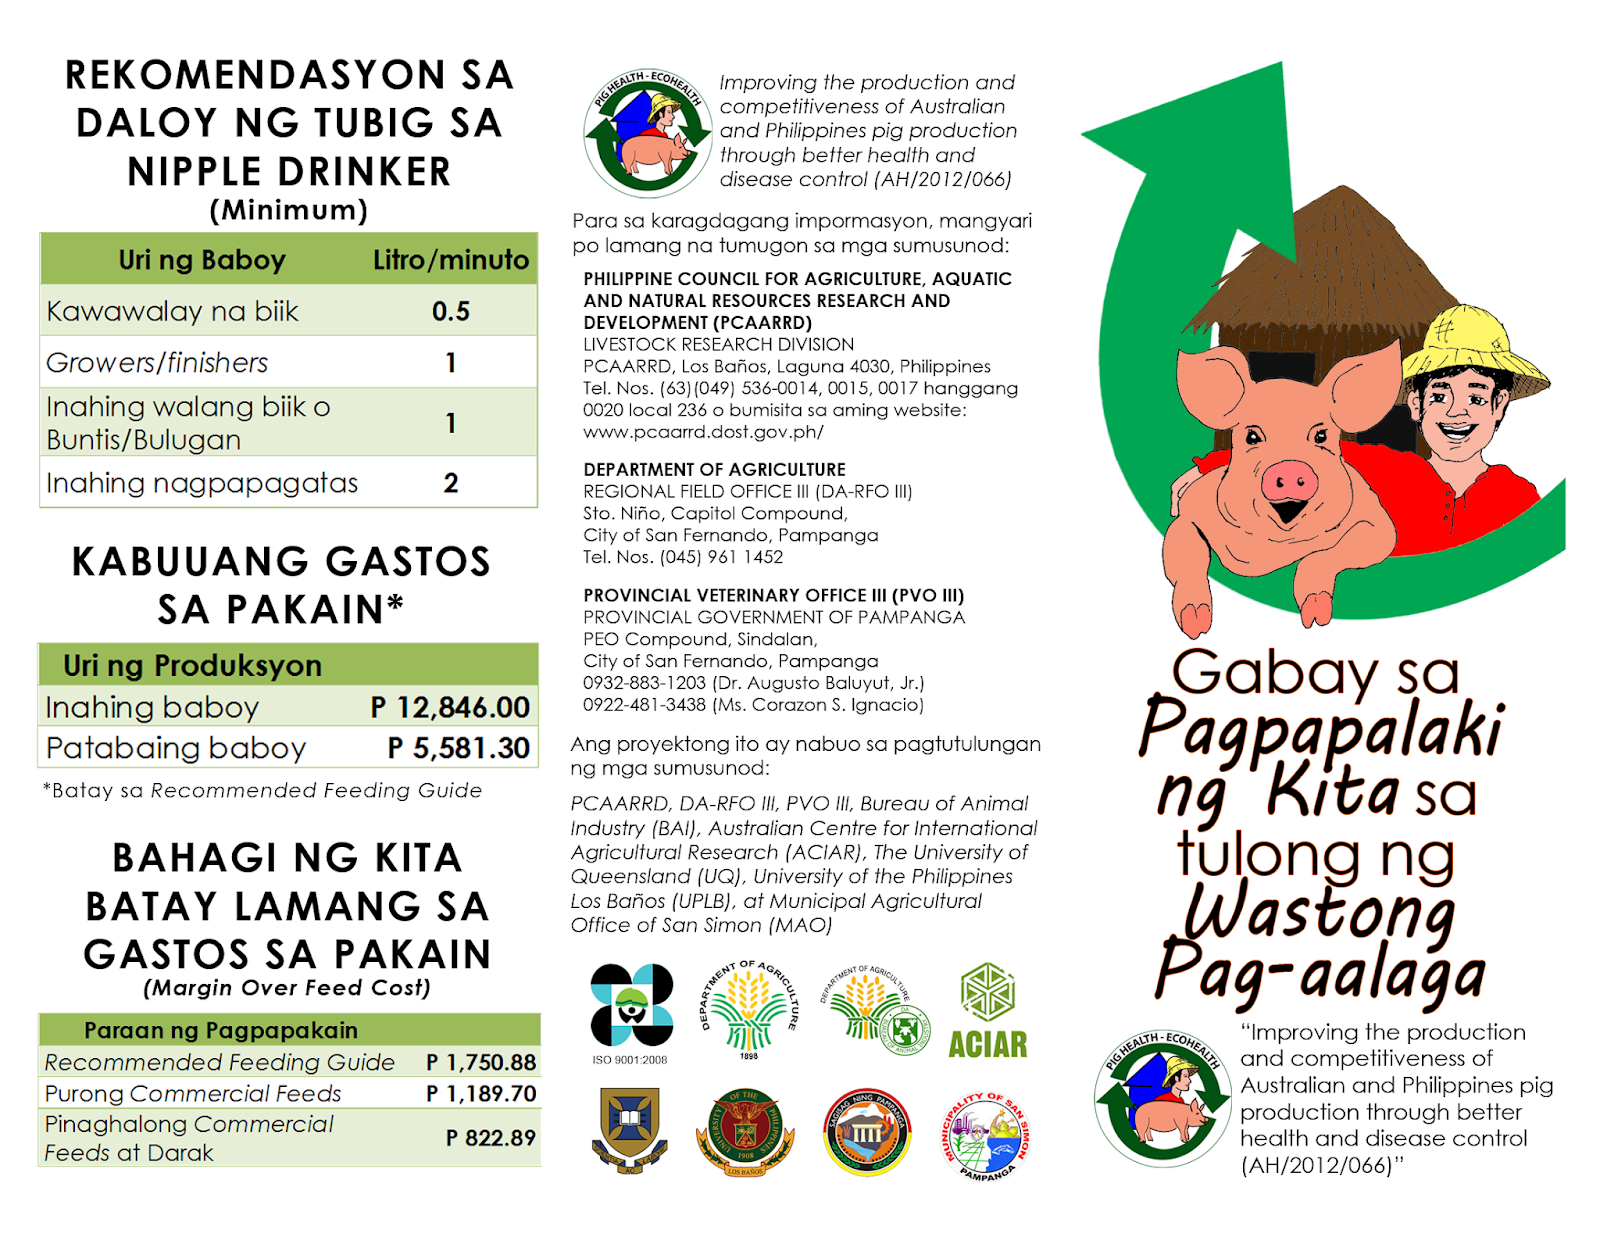 Portfolio: Leaflet - Gabay sa Pagpapalaki ng Kita sa Tulong ng Wastong